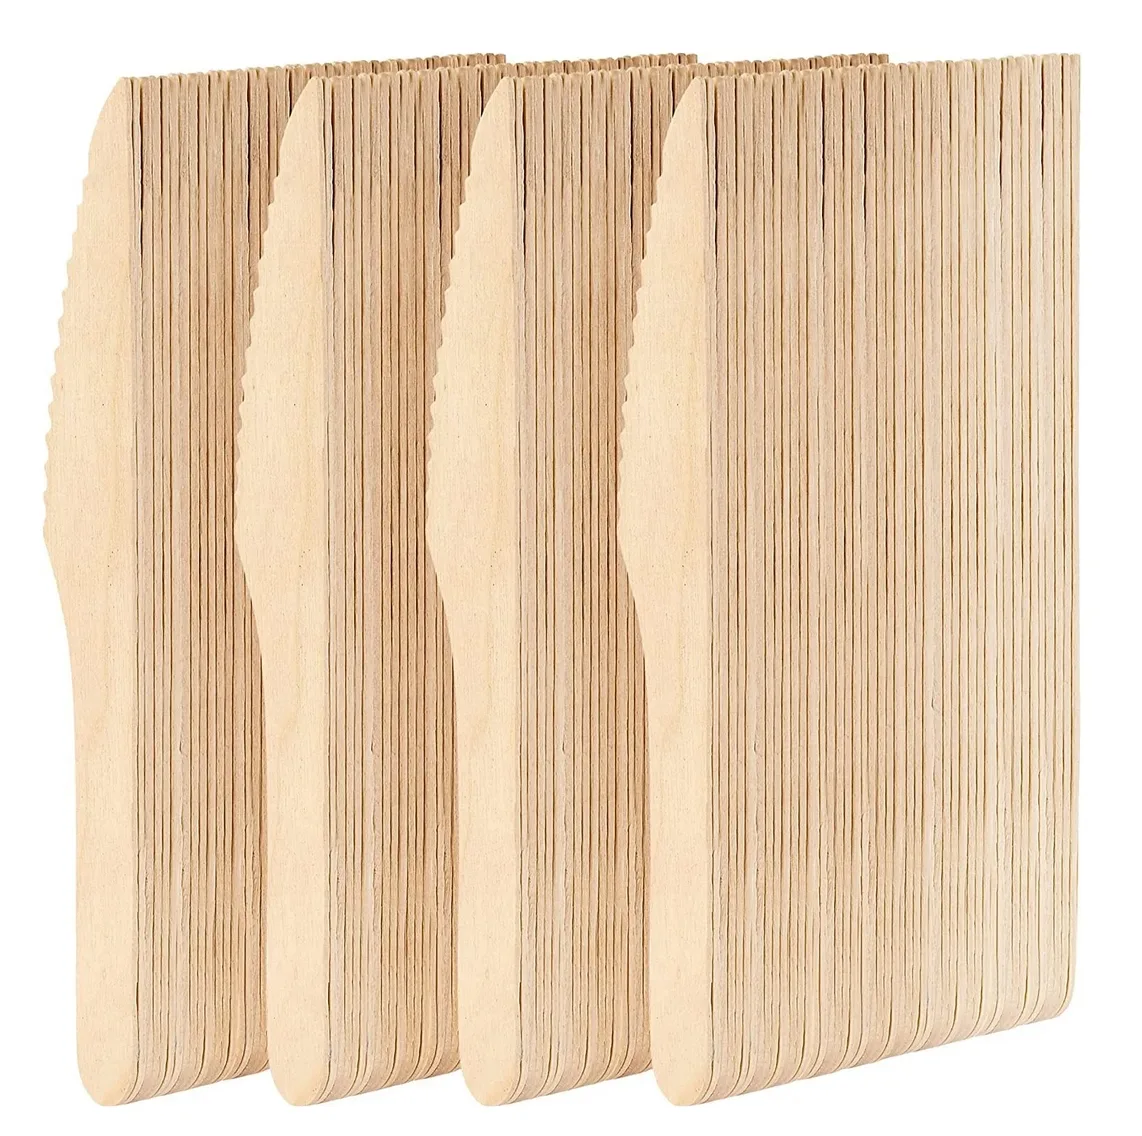 Noże drewniane jednorazowe ekologiczne zestaw 100szt 2537